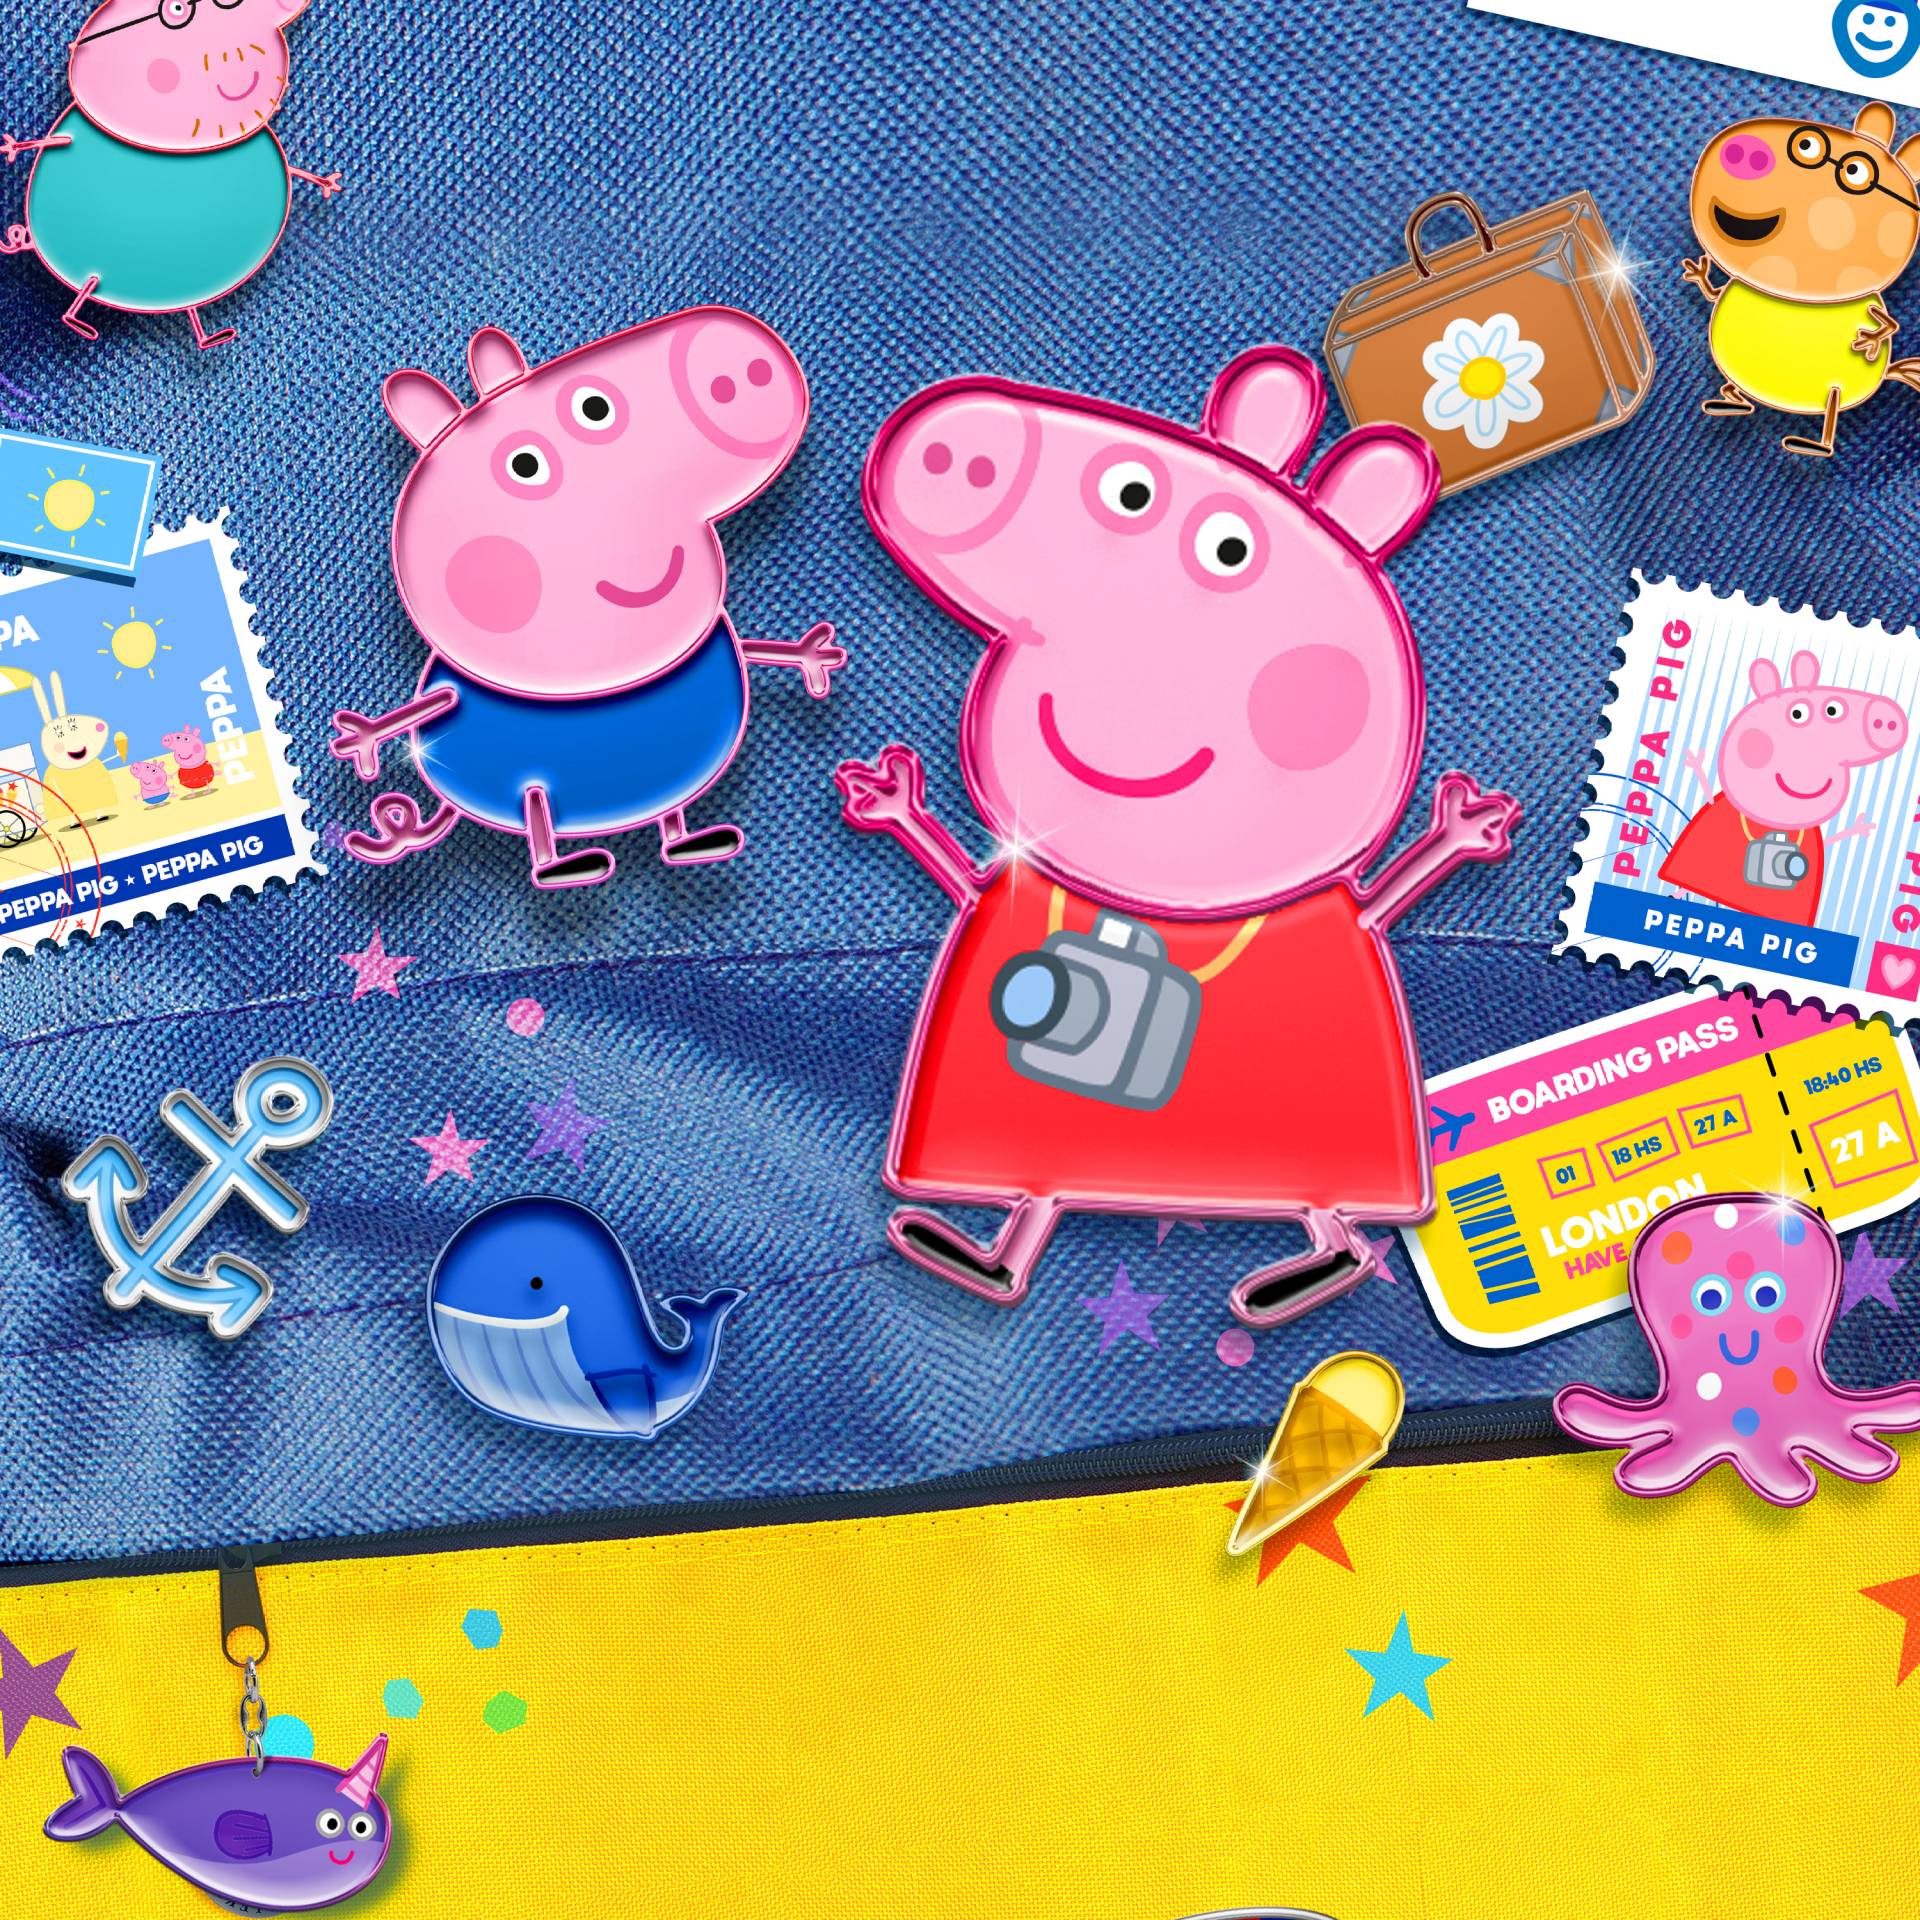 Peppa Pig: Um Mundo de Aventuras ganha data final de lançamento em